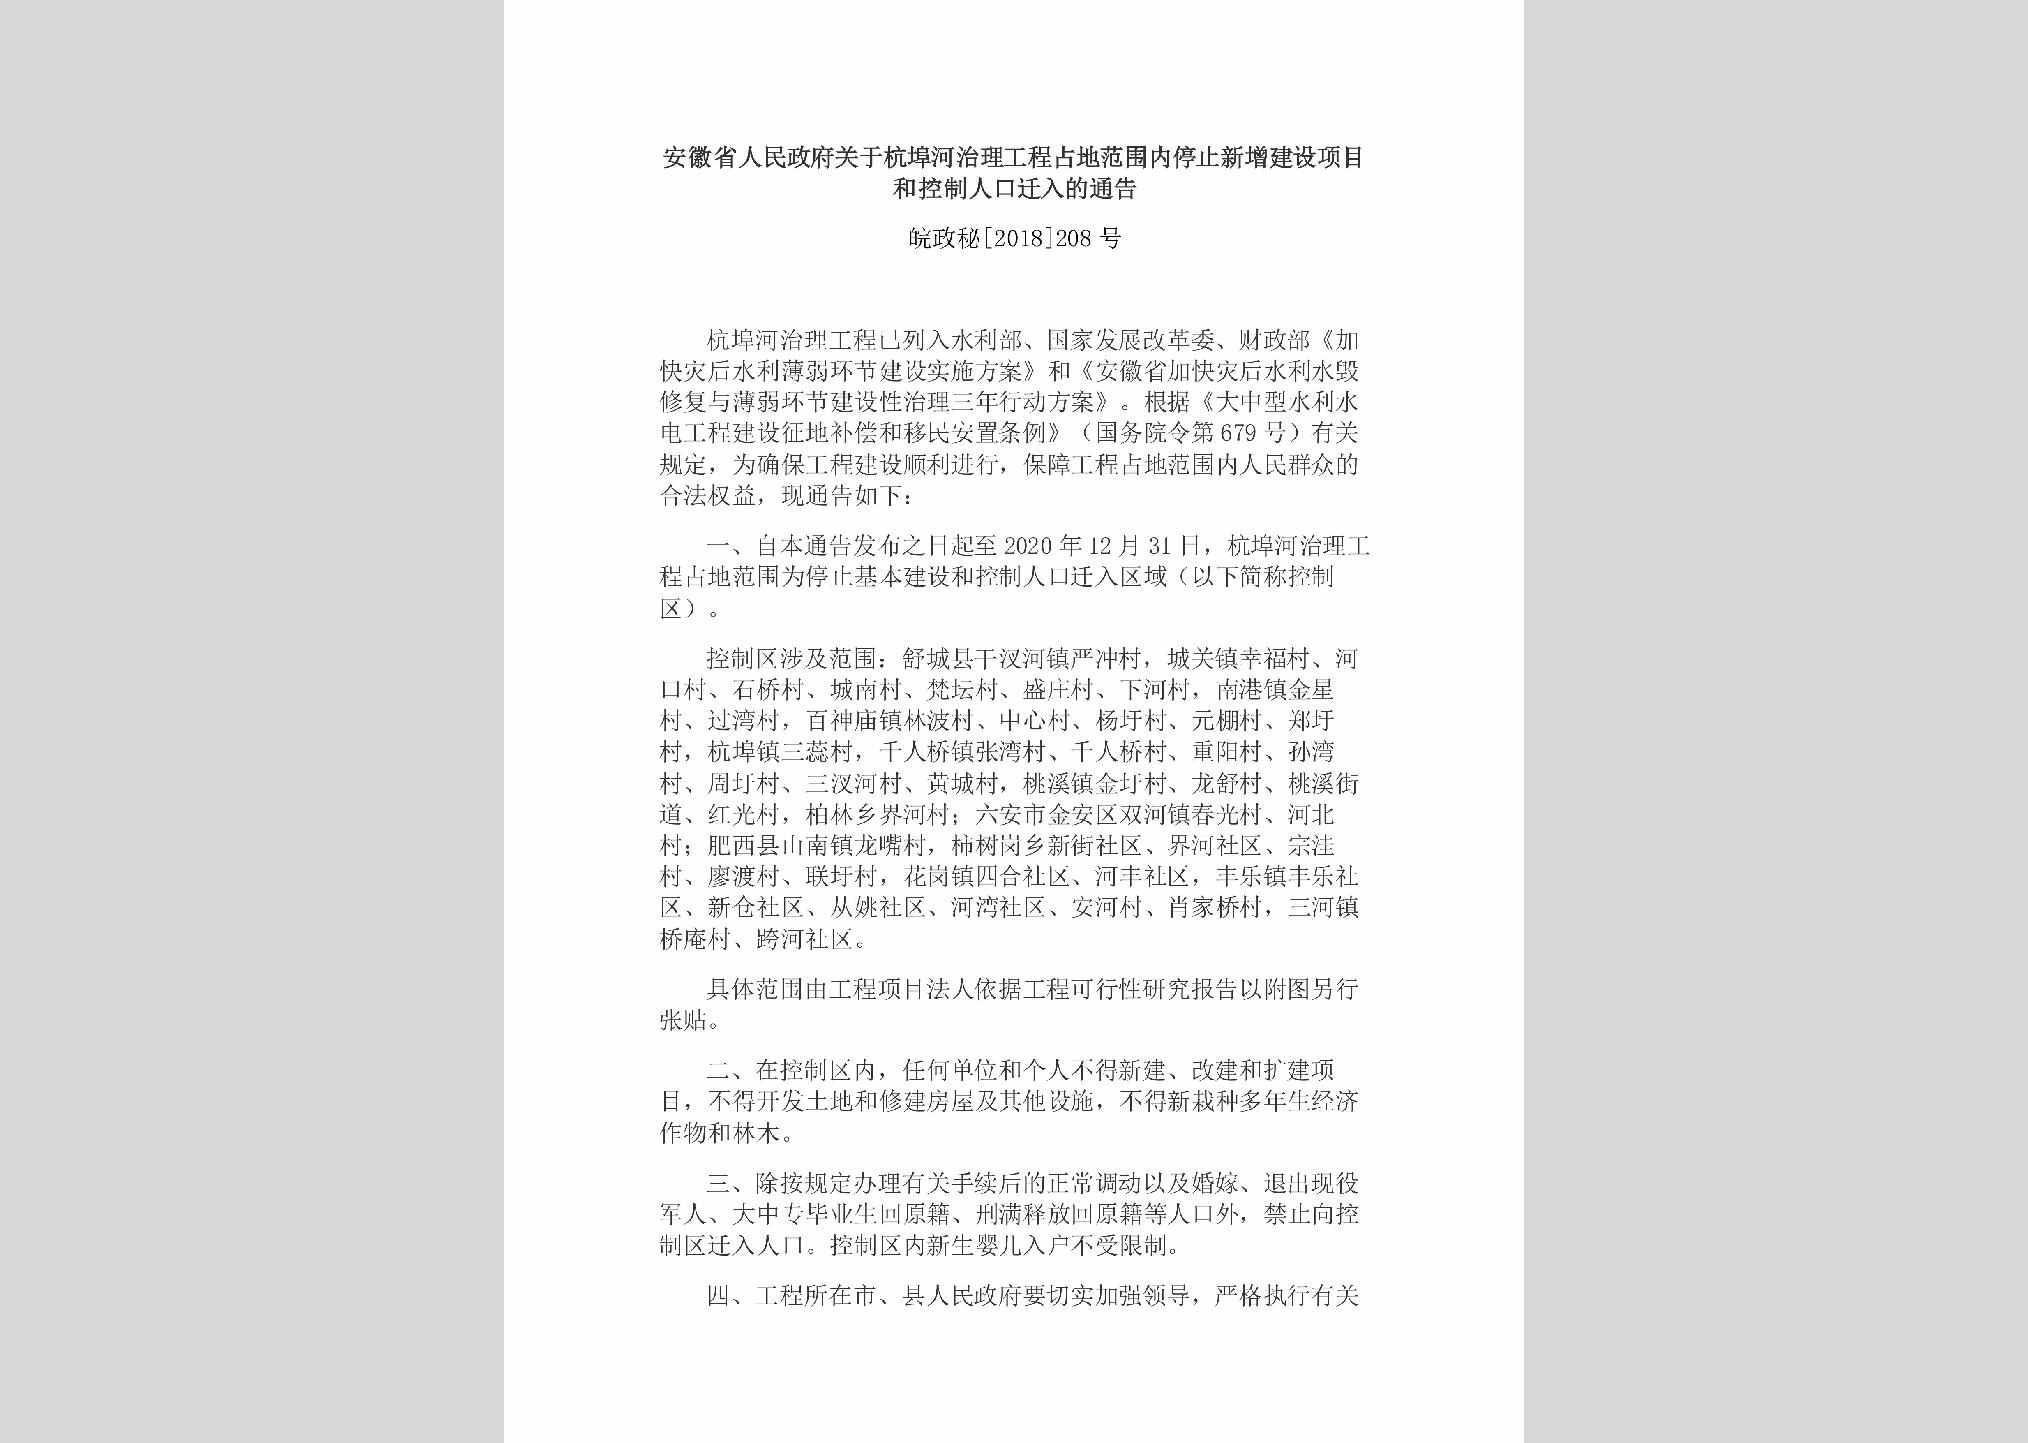 皖政秘[2018]208号：安徽省人民政府关于杭埠河治理工程占地范围内停止新增建设项目和控制人口迁入的通告